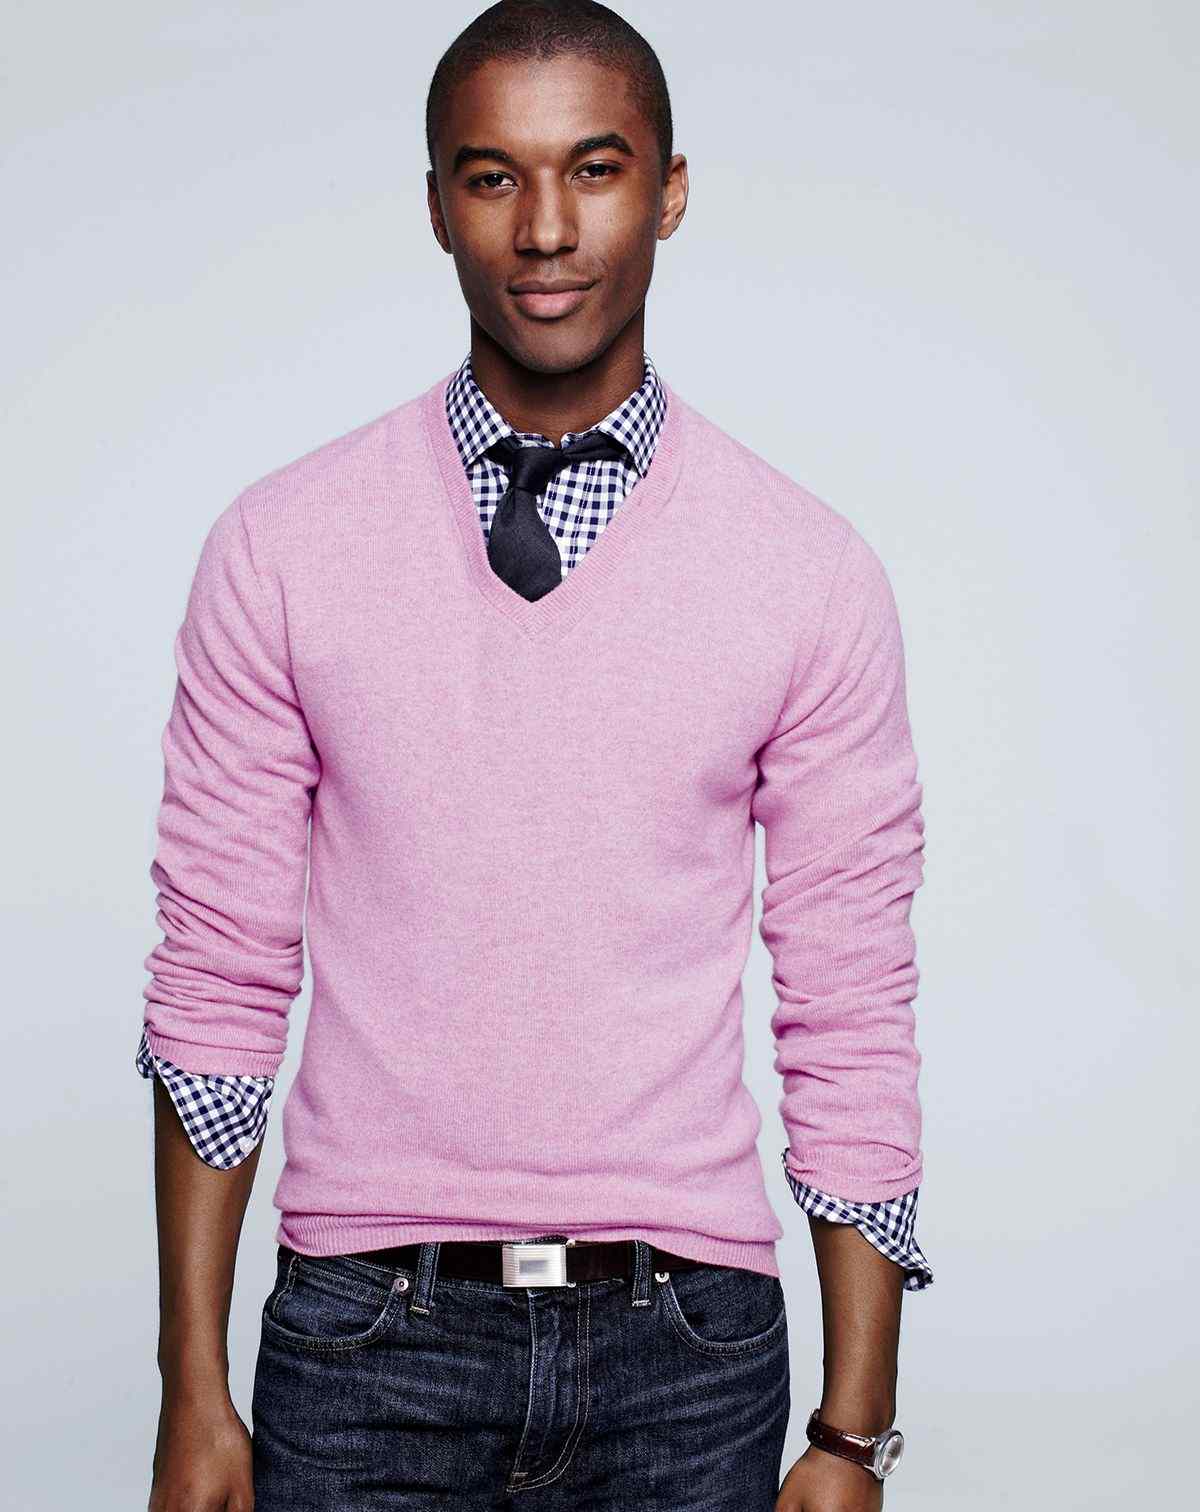 rosa tröja över rutig skjorta i svart och vitt med svart slips